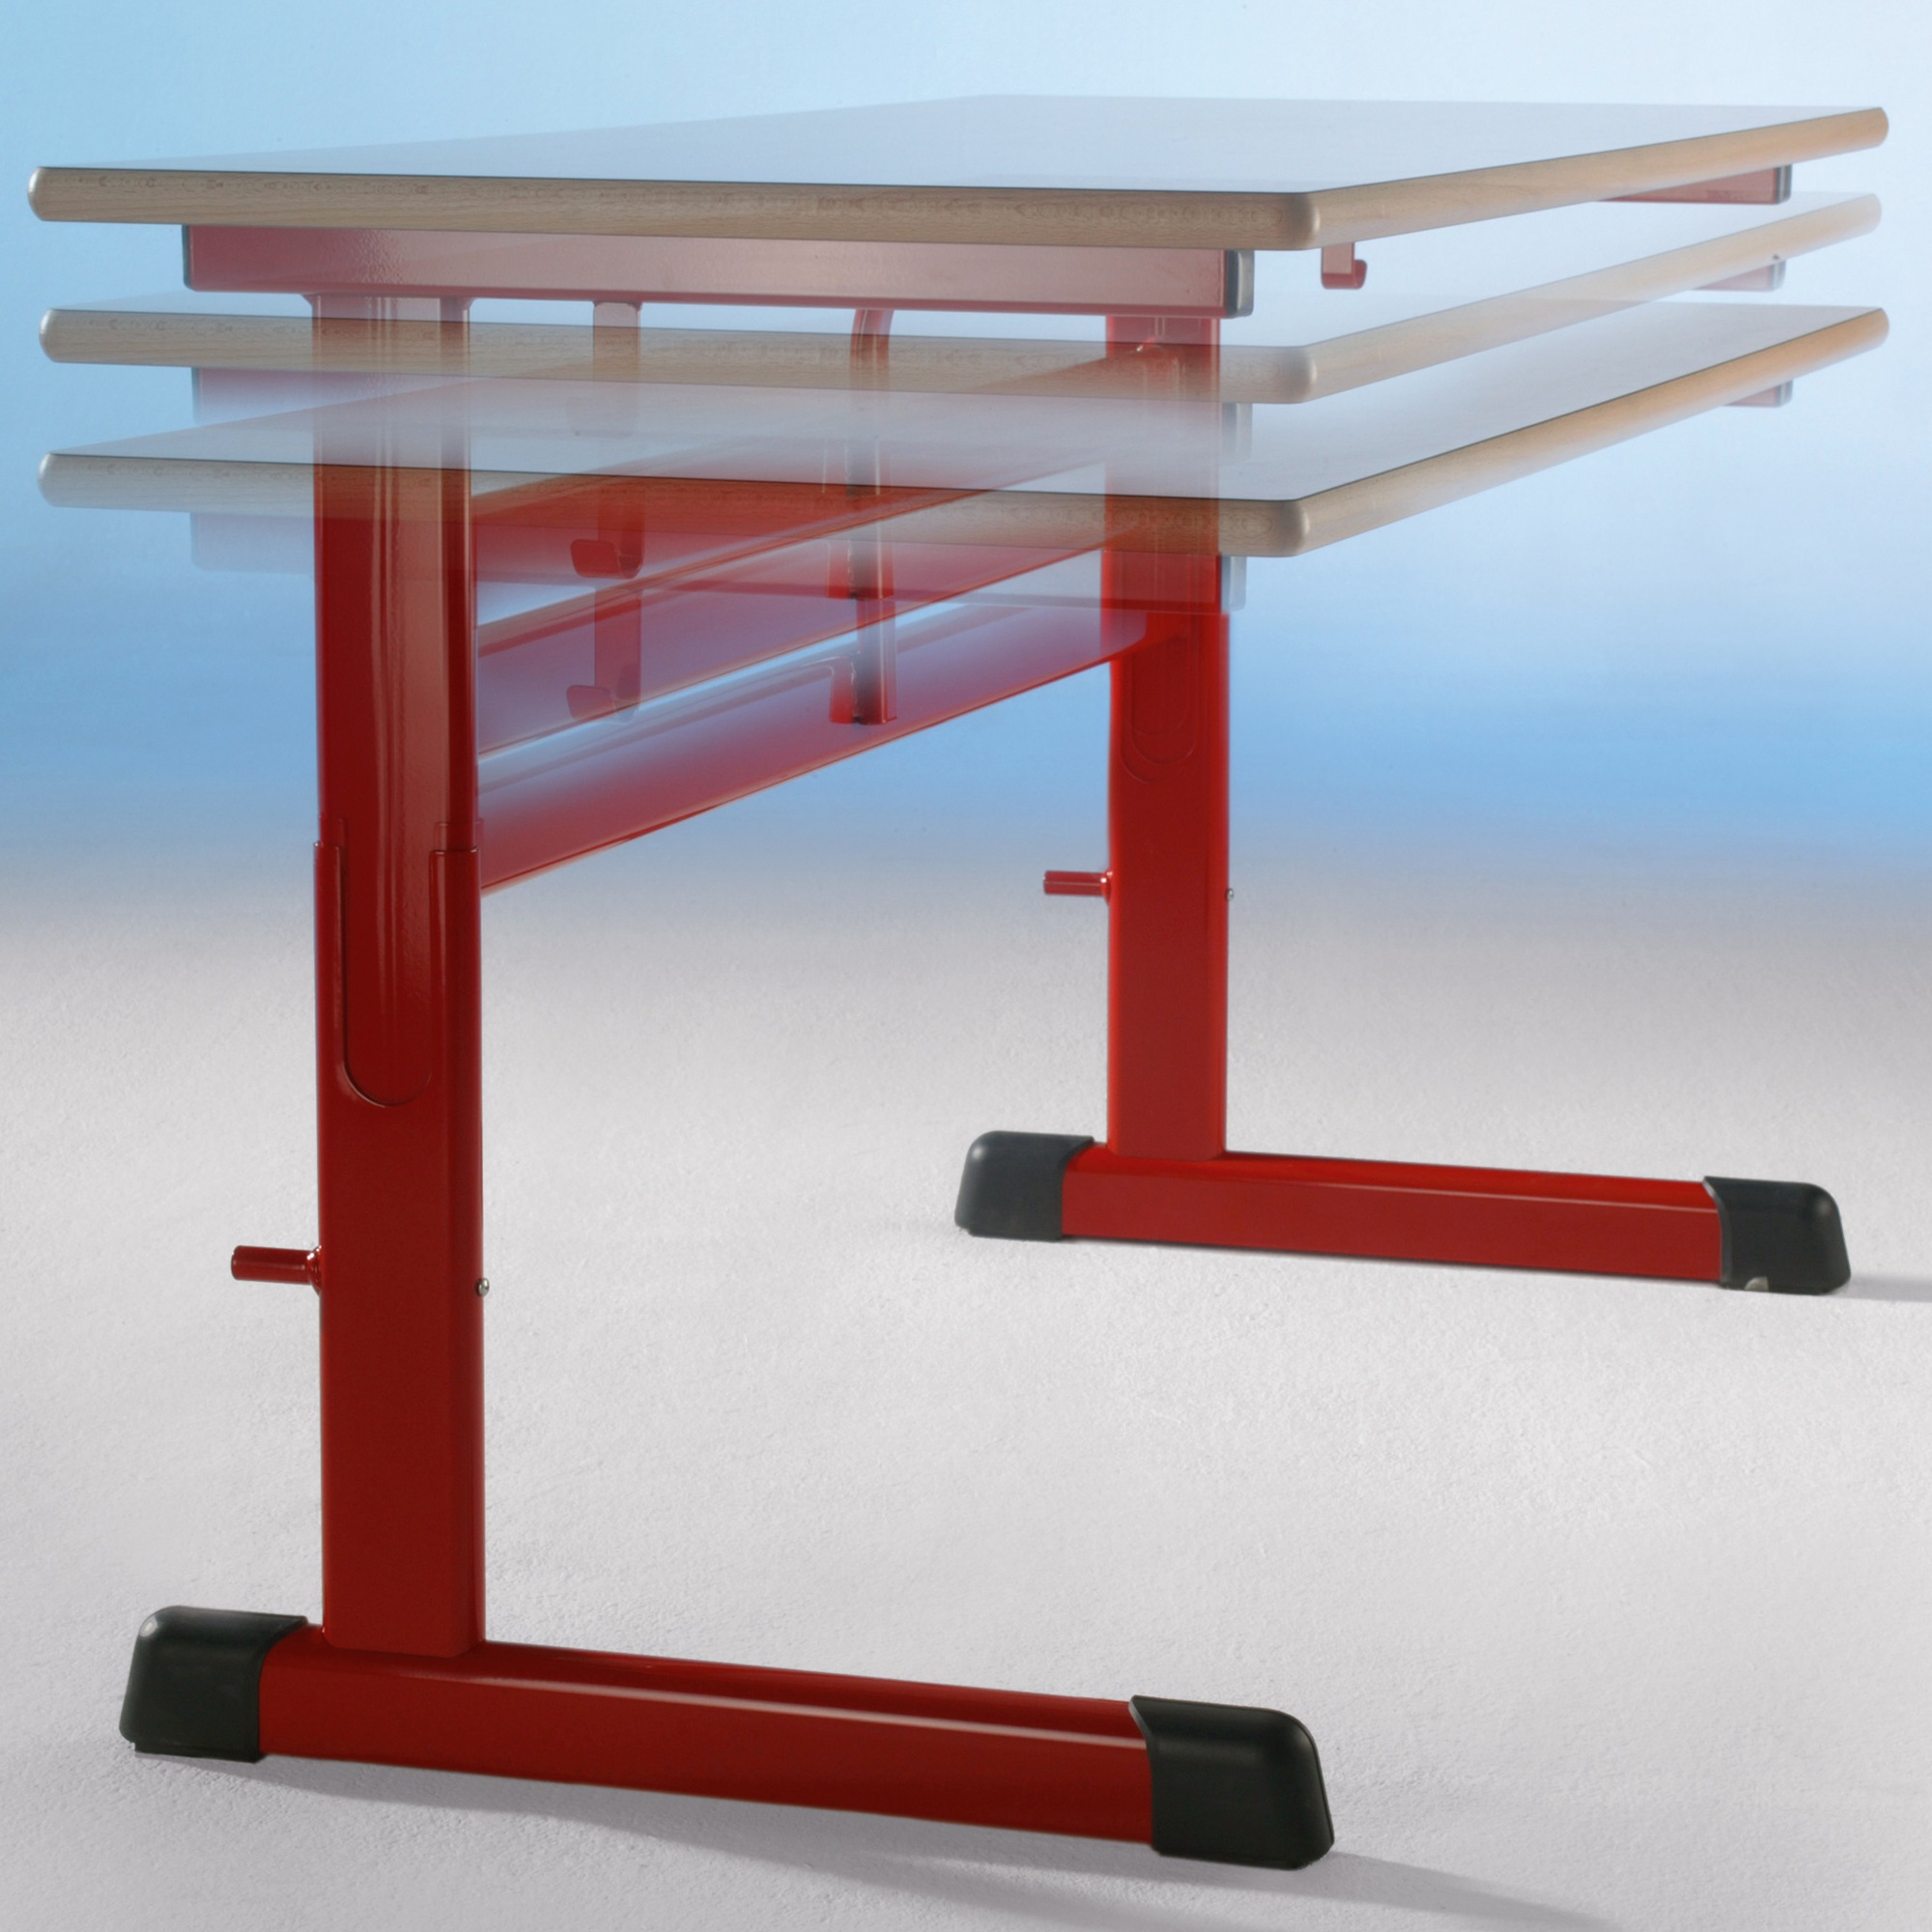 2-zits studententafel, model TH, in hoogte verstelbaar, melamine werkblad met ABS rand, afgeronde hoeken